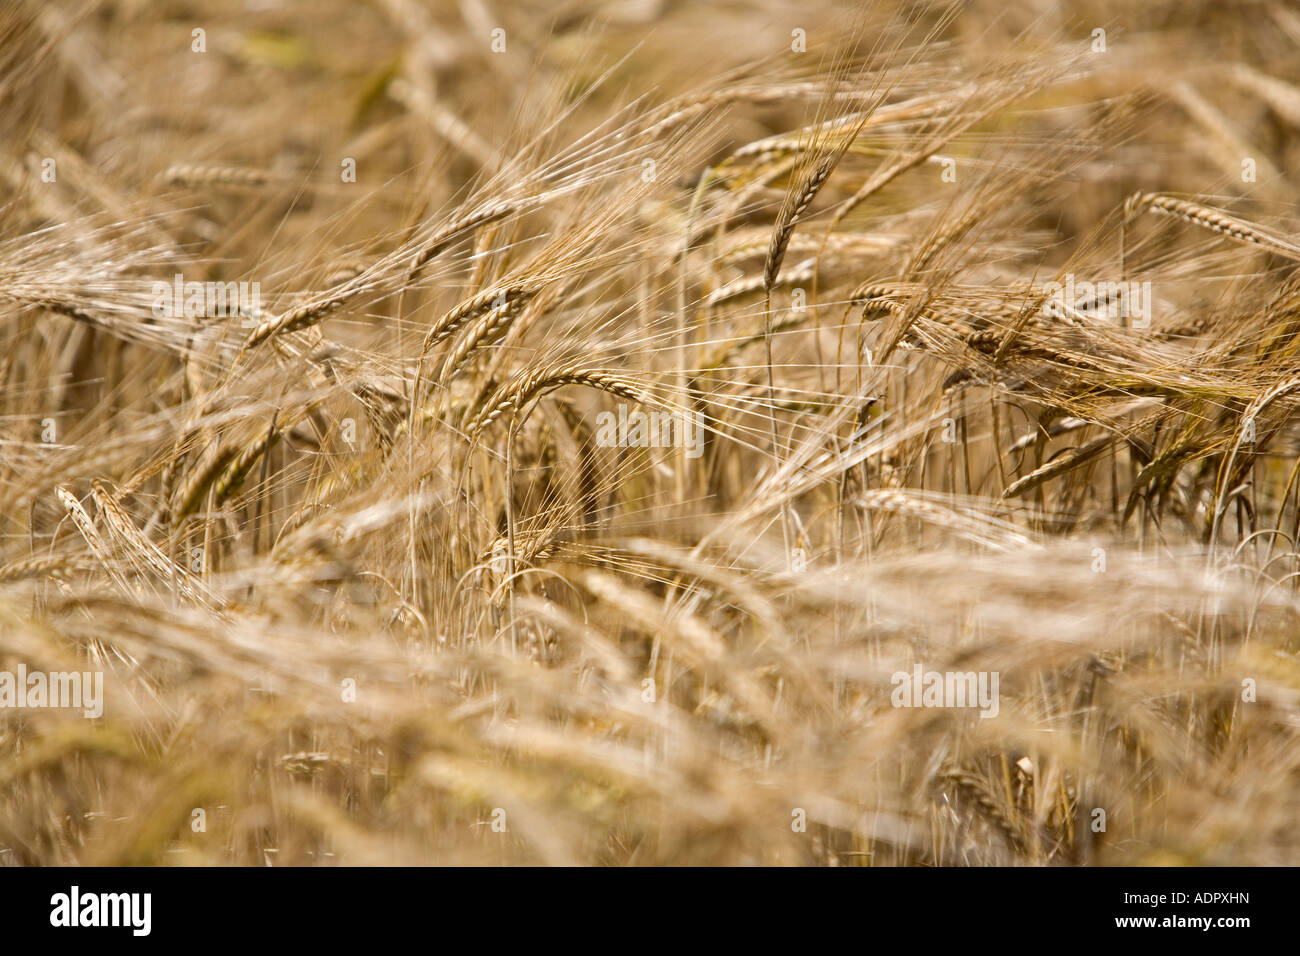 Vista de primer plano de la cebada dorada madura lista para la cosecha Foto de stock